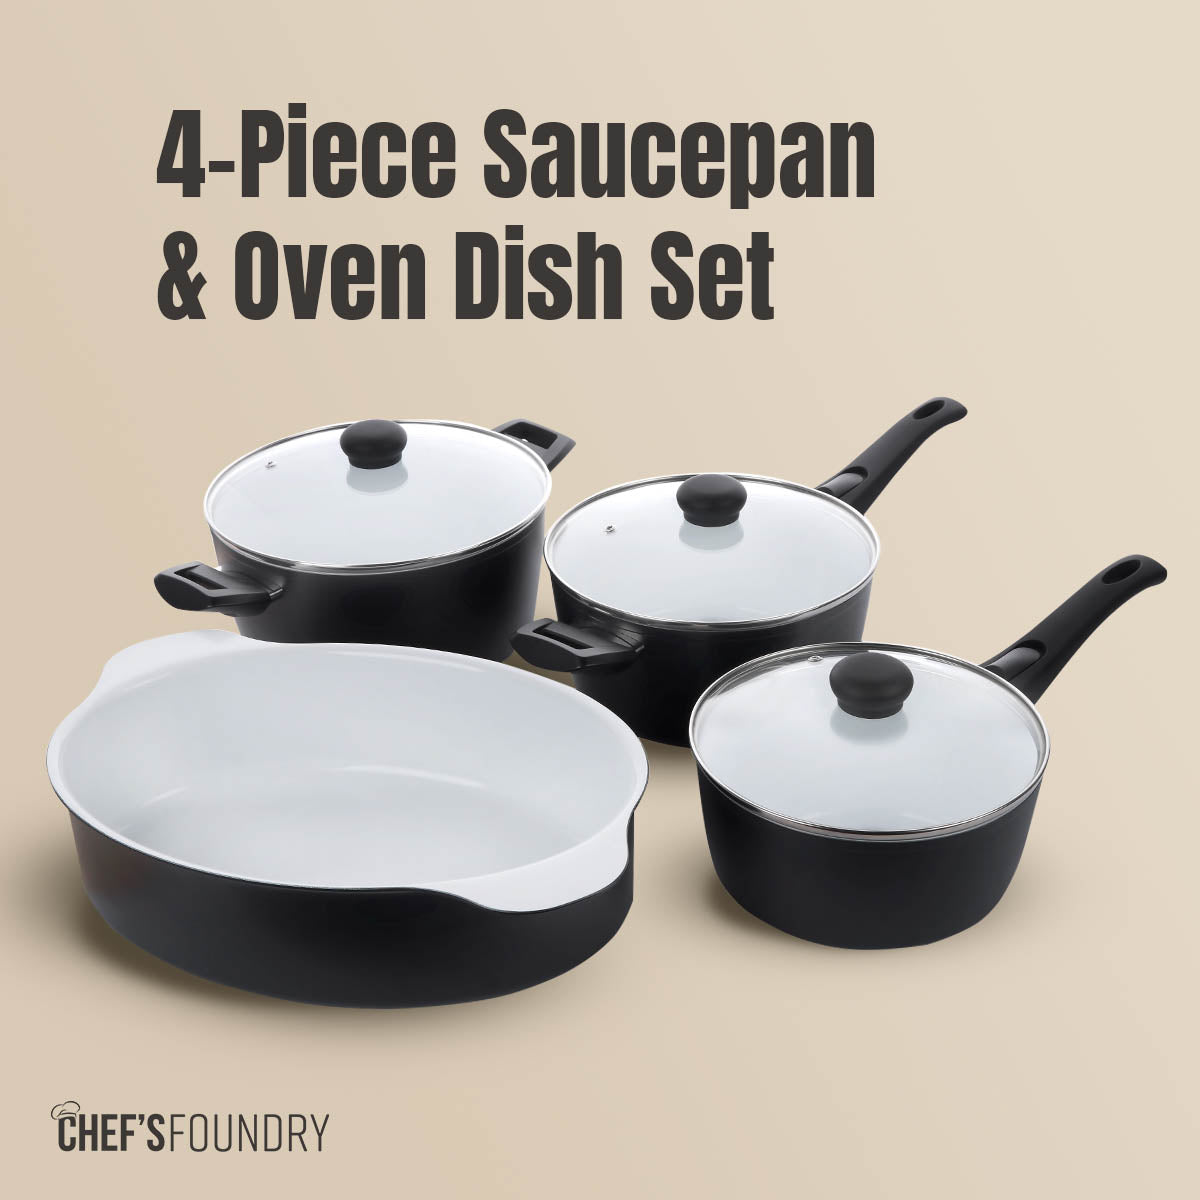 3 x P600 Saucepan & Oven Dish Set